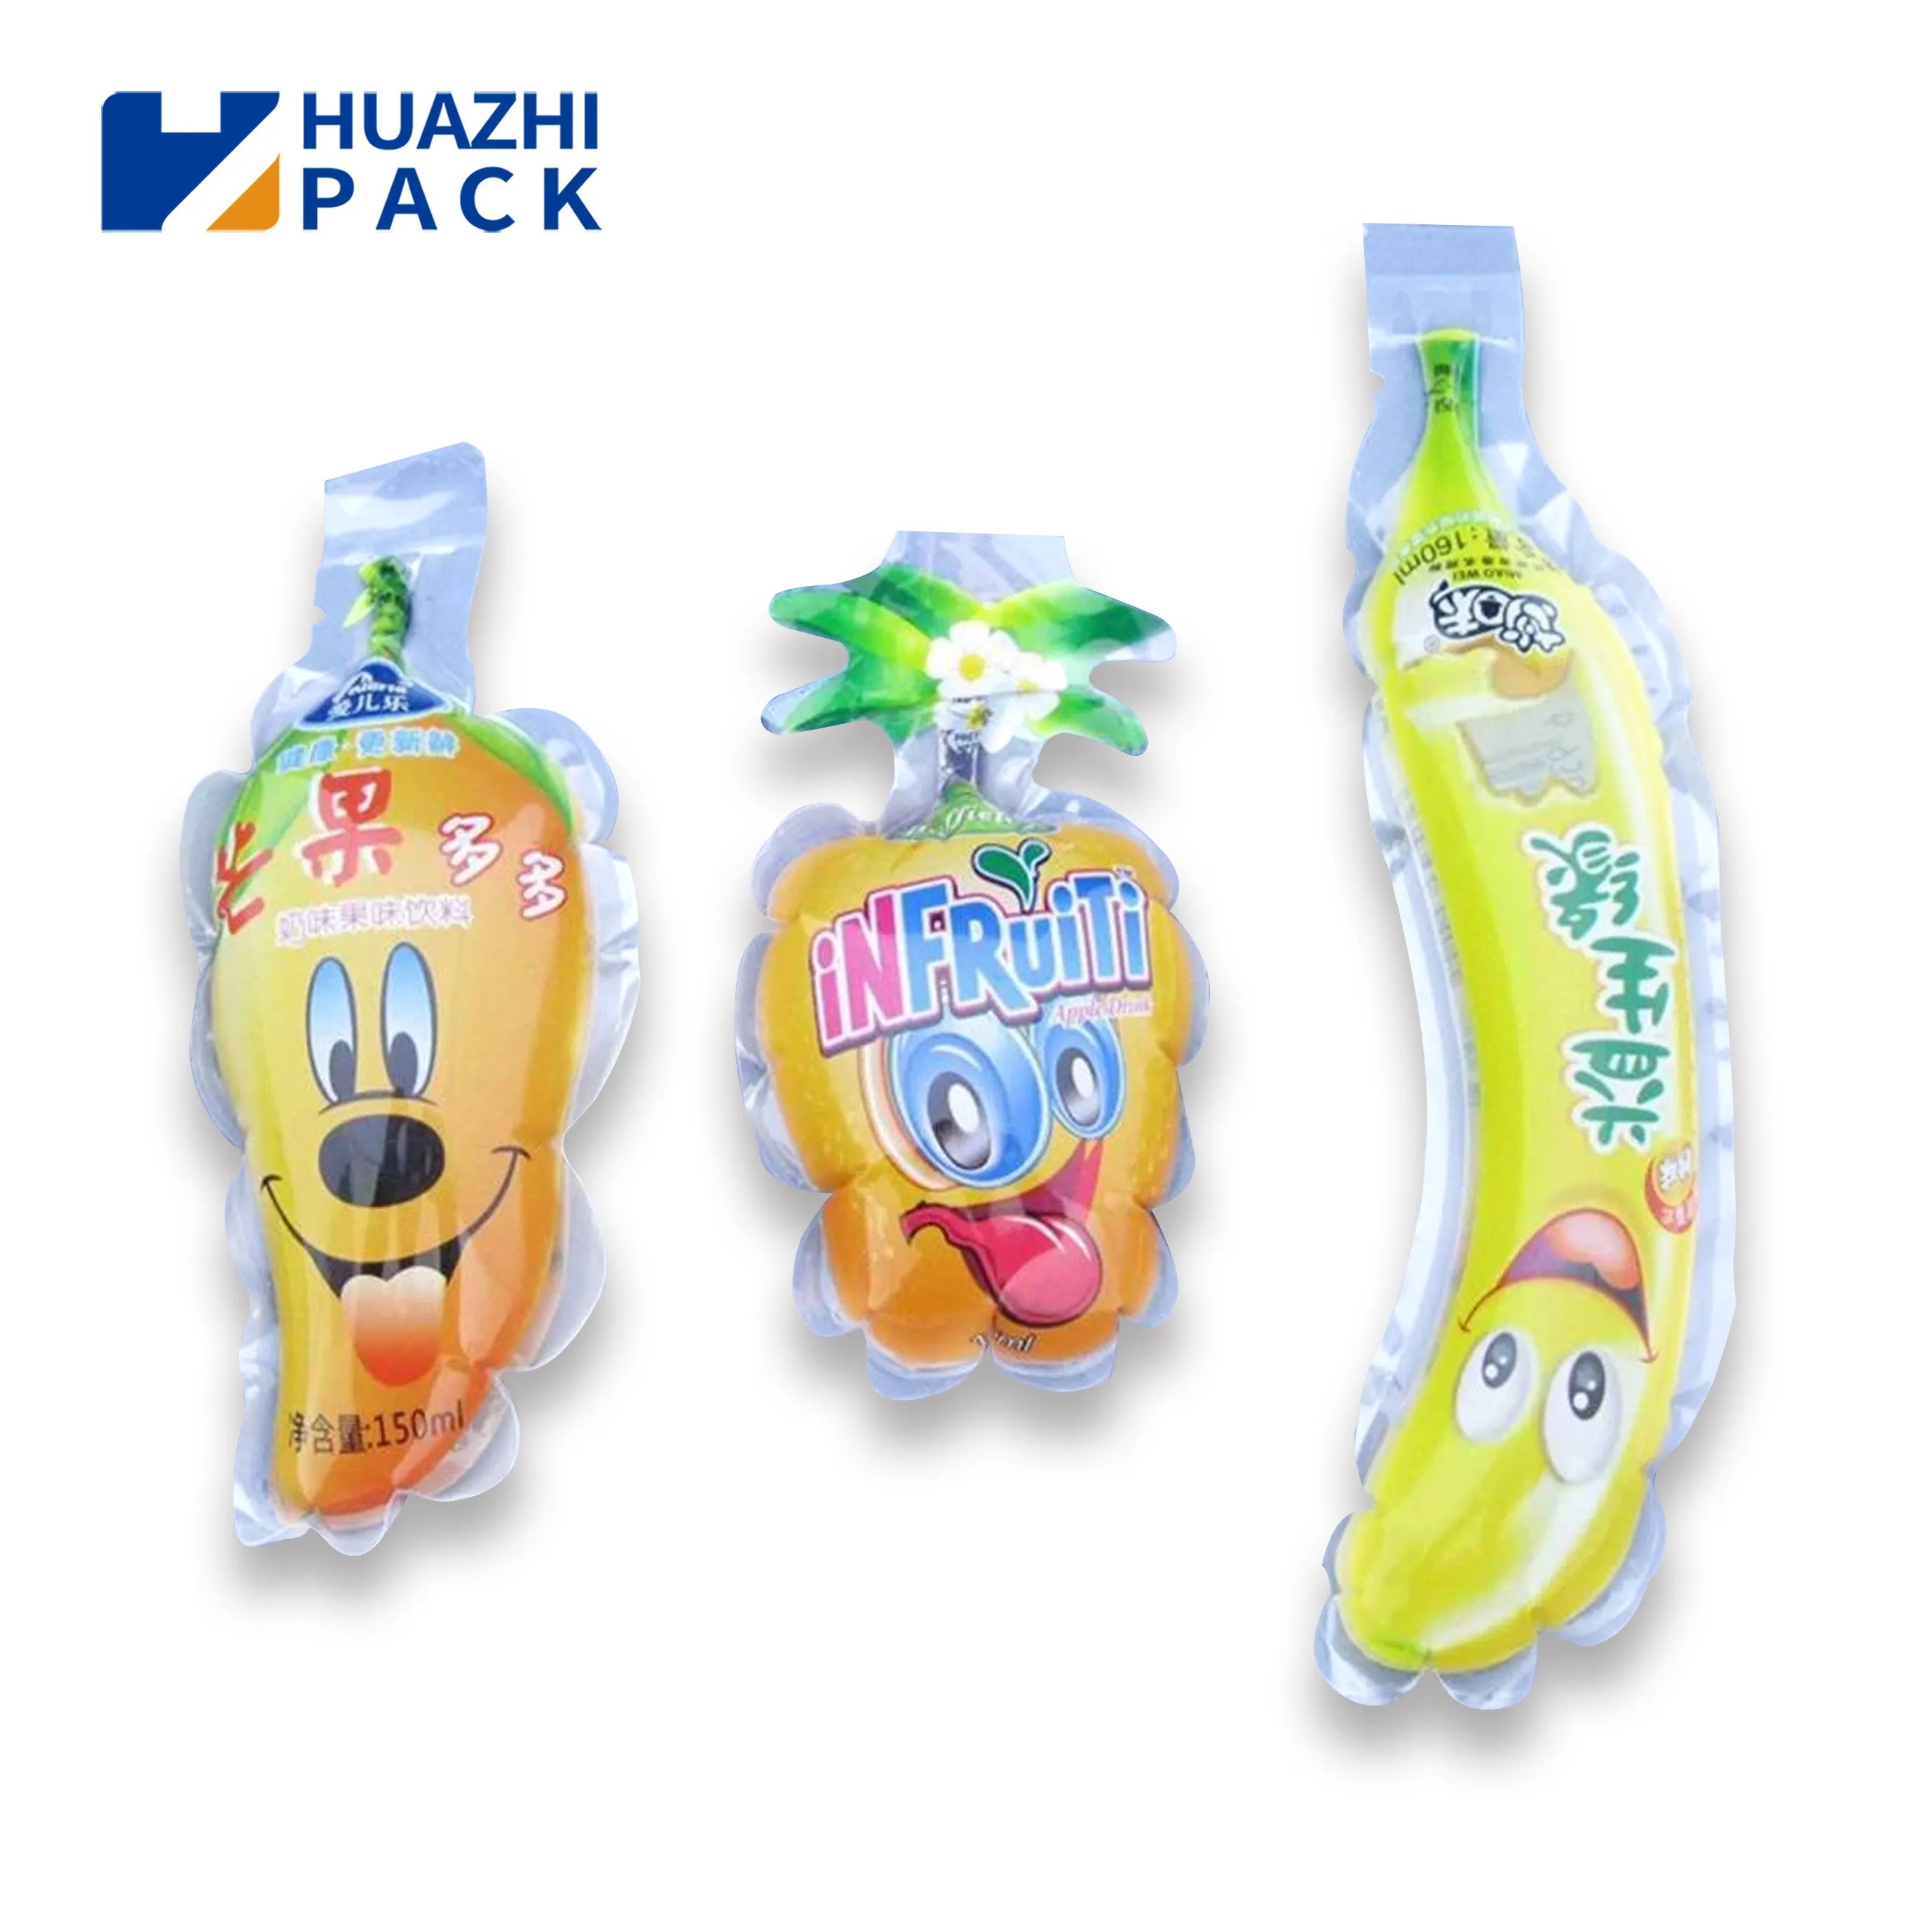 Bolsita de inyección de líquido en forma de plástico personalizada, bolsa de embalaje en forma de fruta, bolsa de bebida en forma de bolsa de jugo